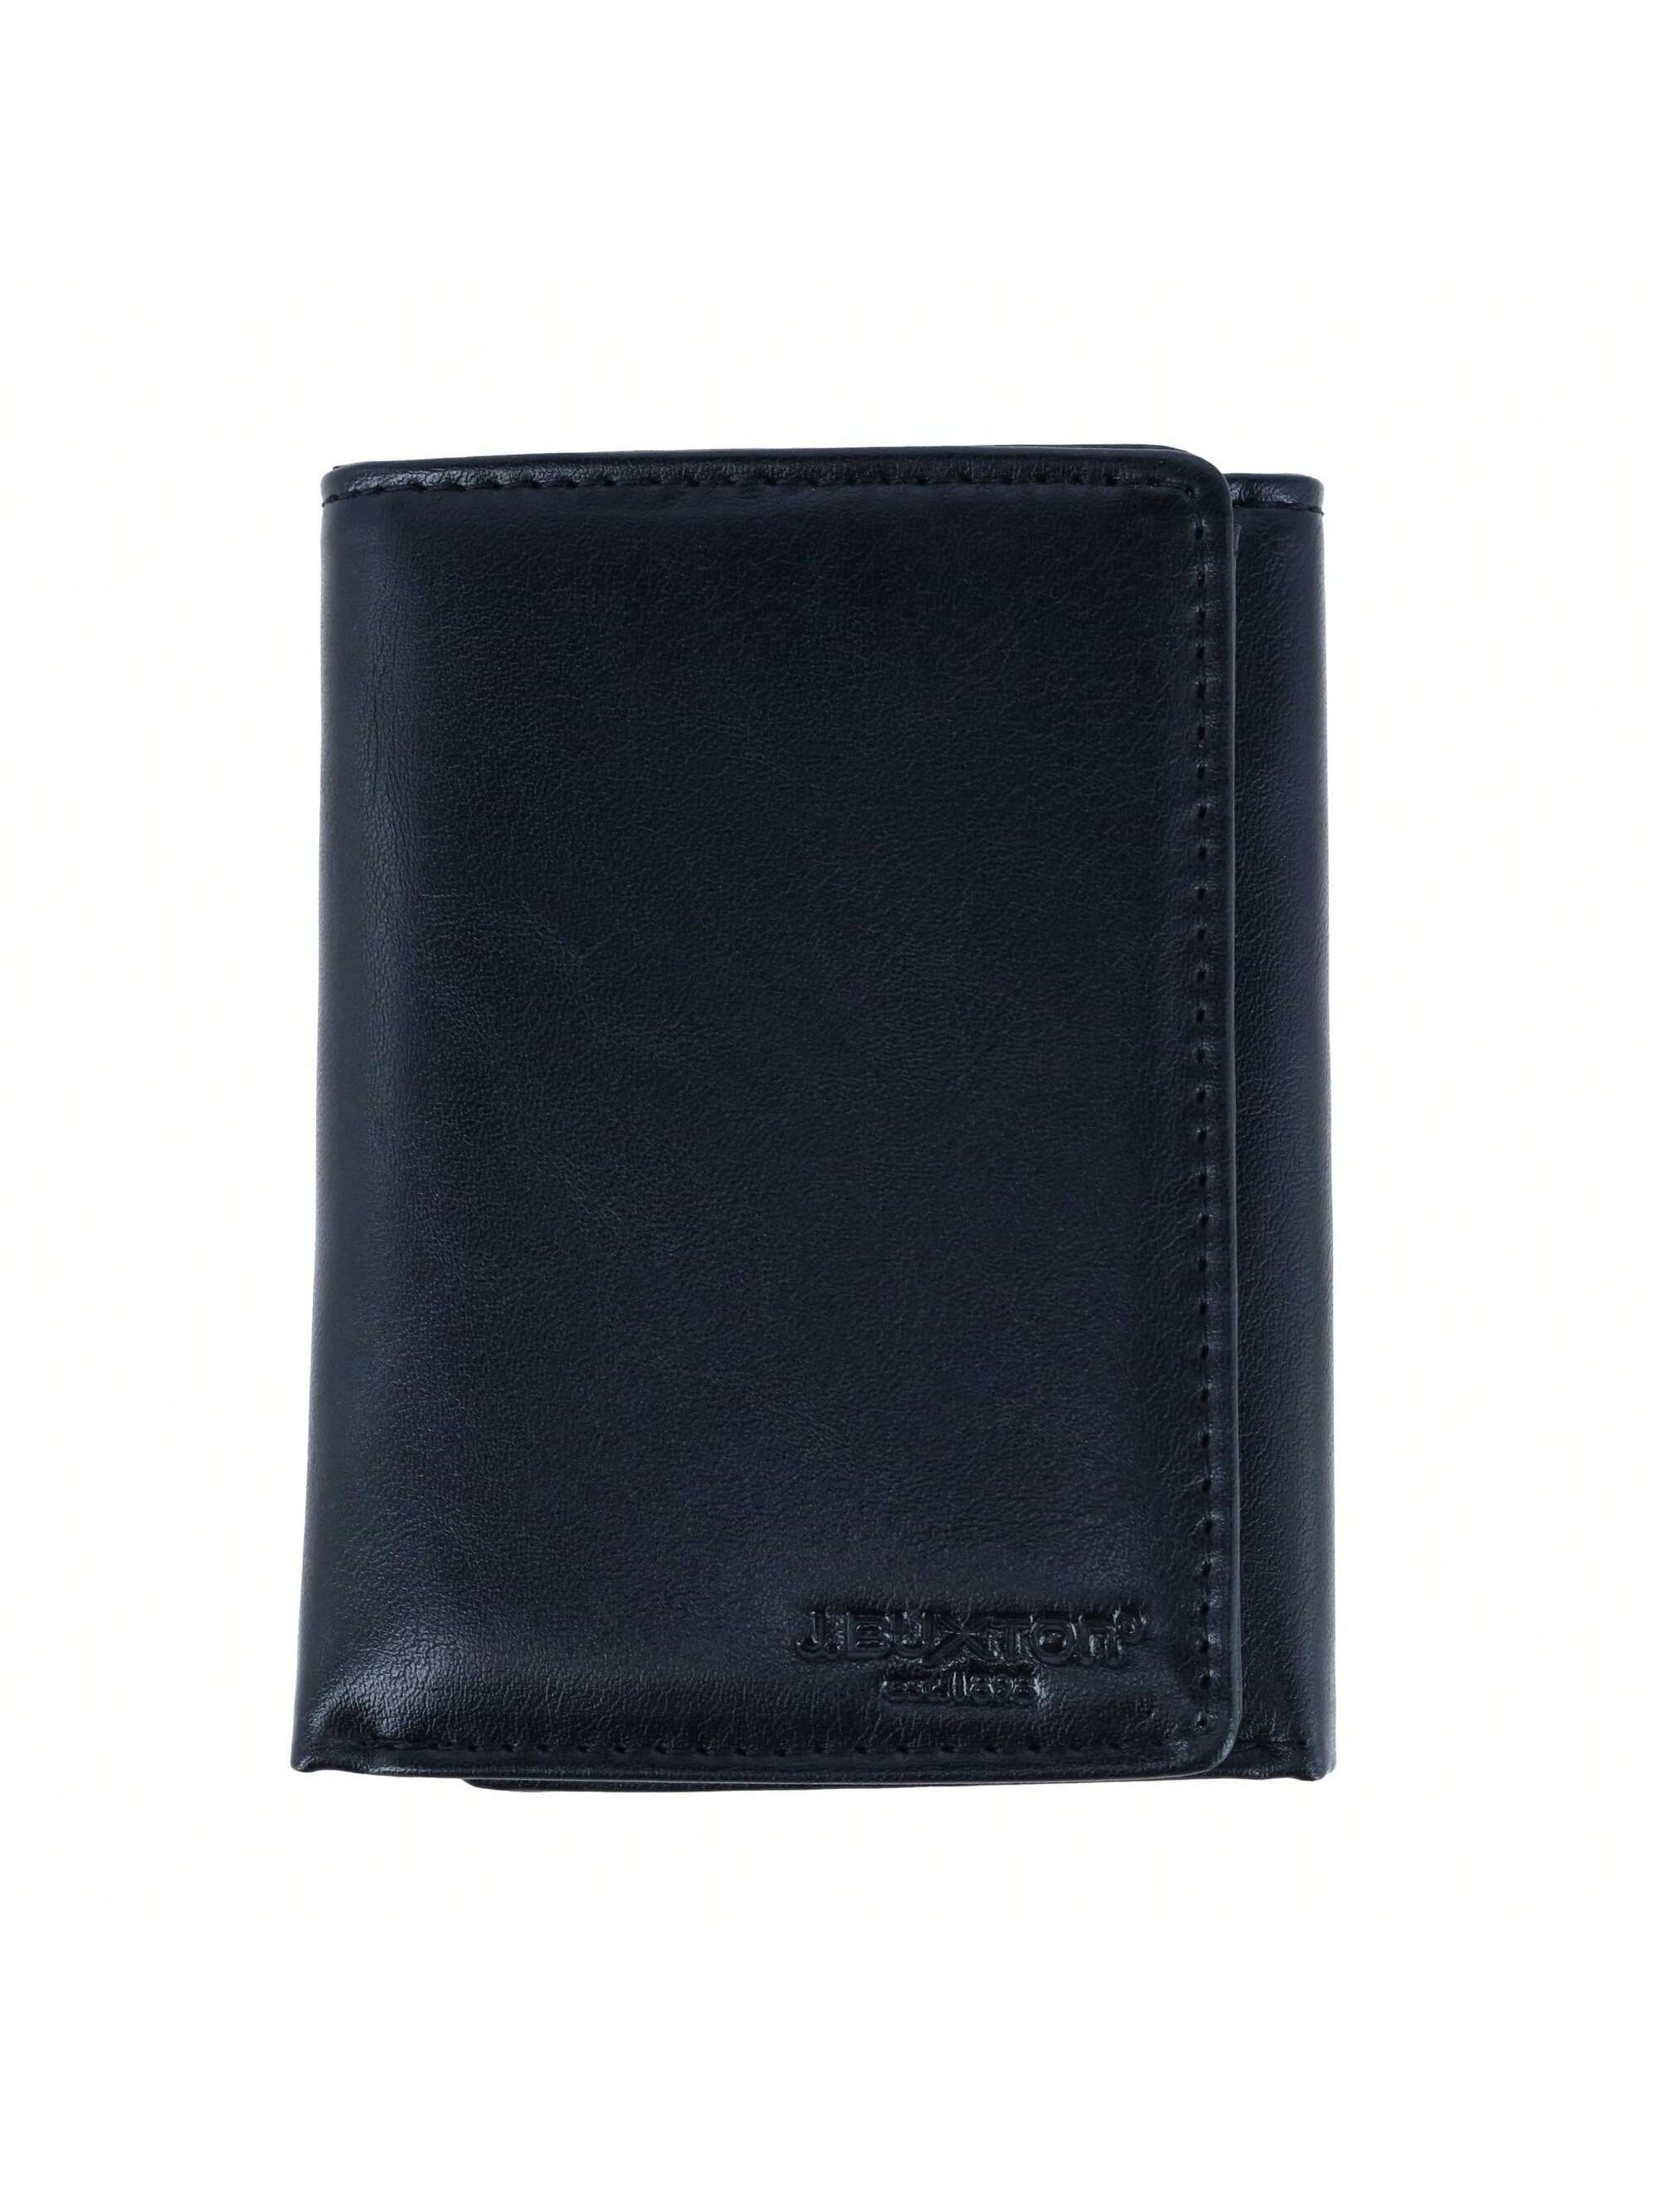 Мужской кошелек Buxton тройного сложения из веганской кожи с RFID-метками, черный